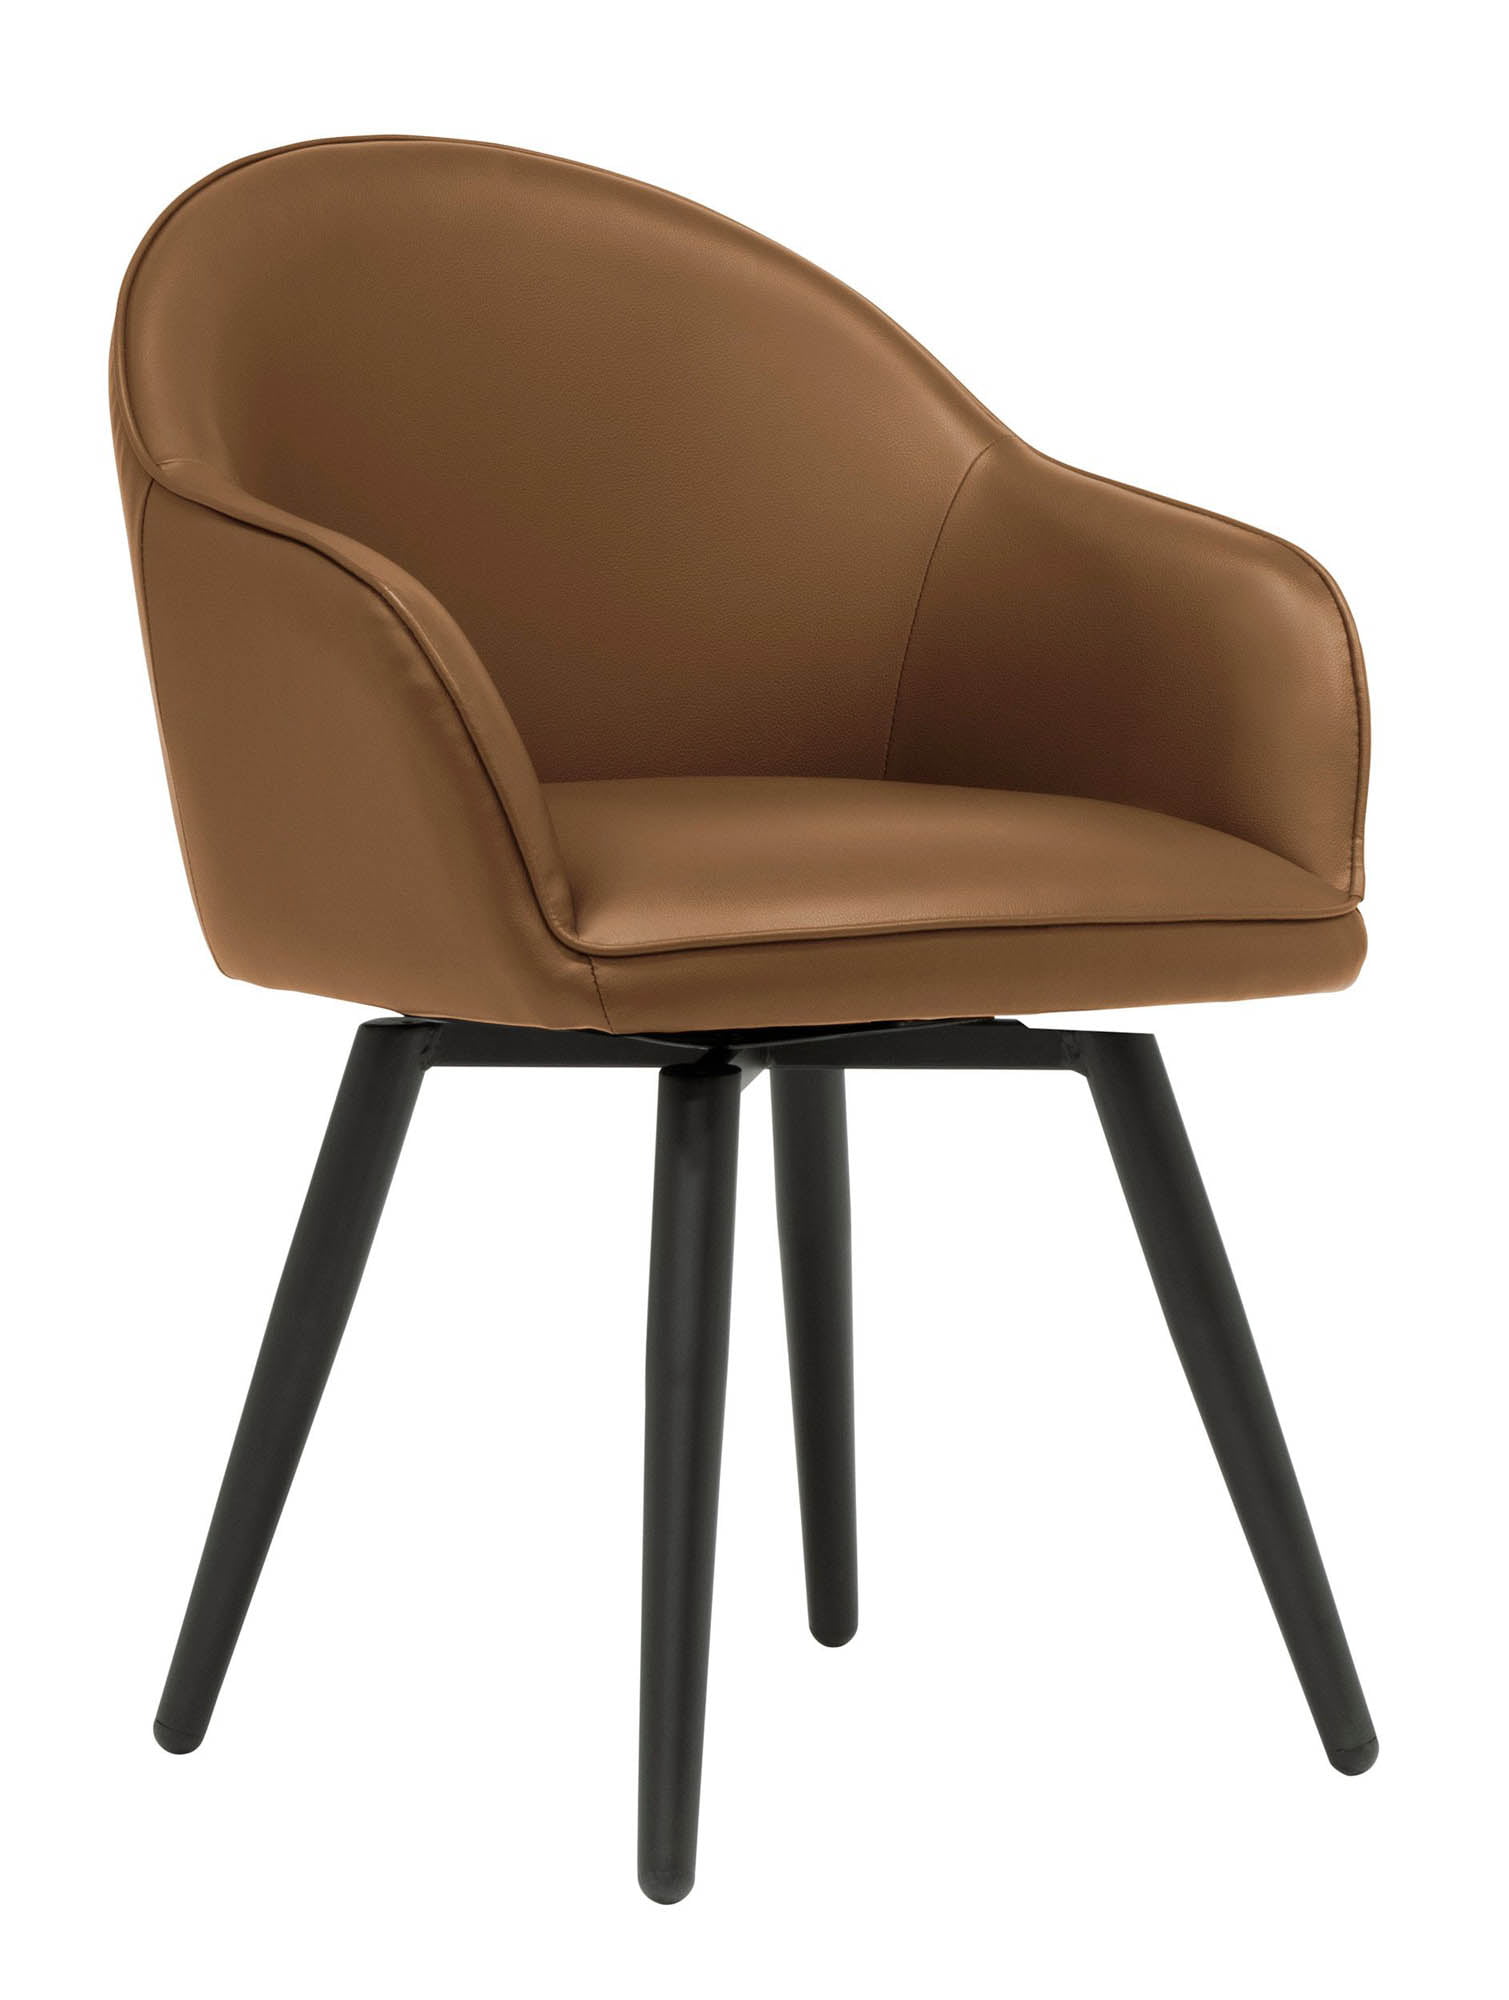 الحصى تحت الأرض مجموع  Offex Dome Swivel Accent Chair with Arms, Office/Dining/Guest,  Black/Caramel Brown Faux Leather - Walmart.com